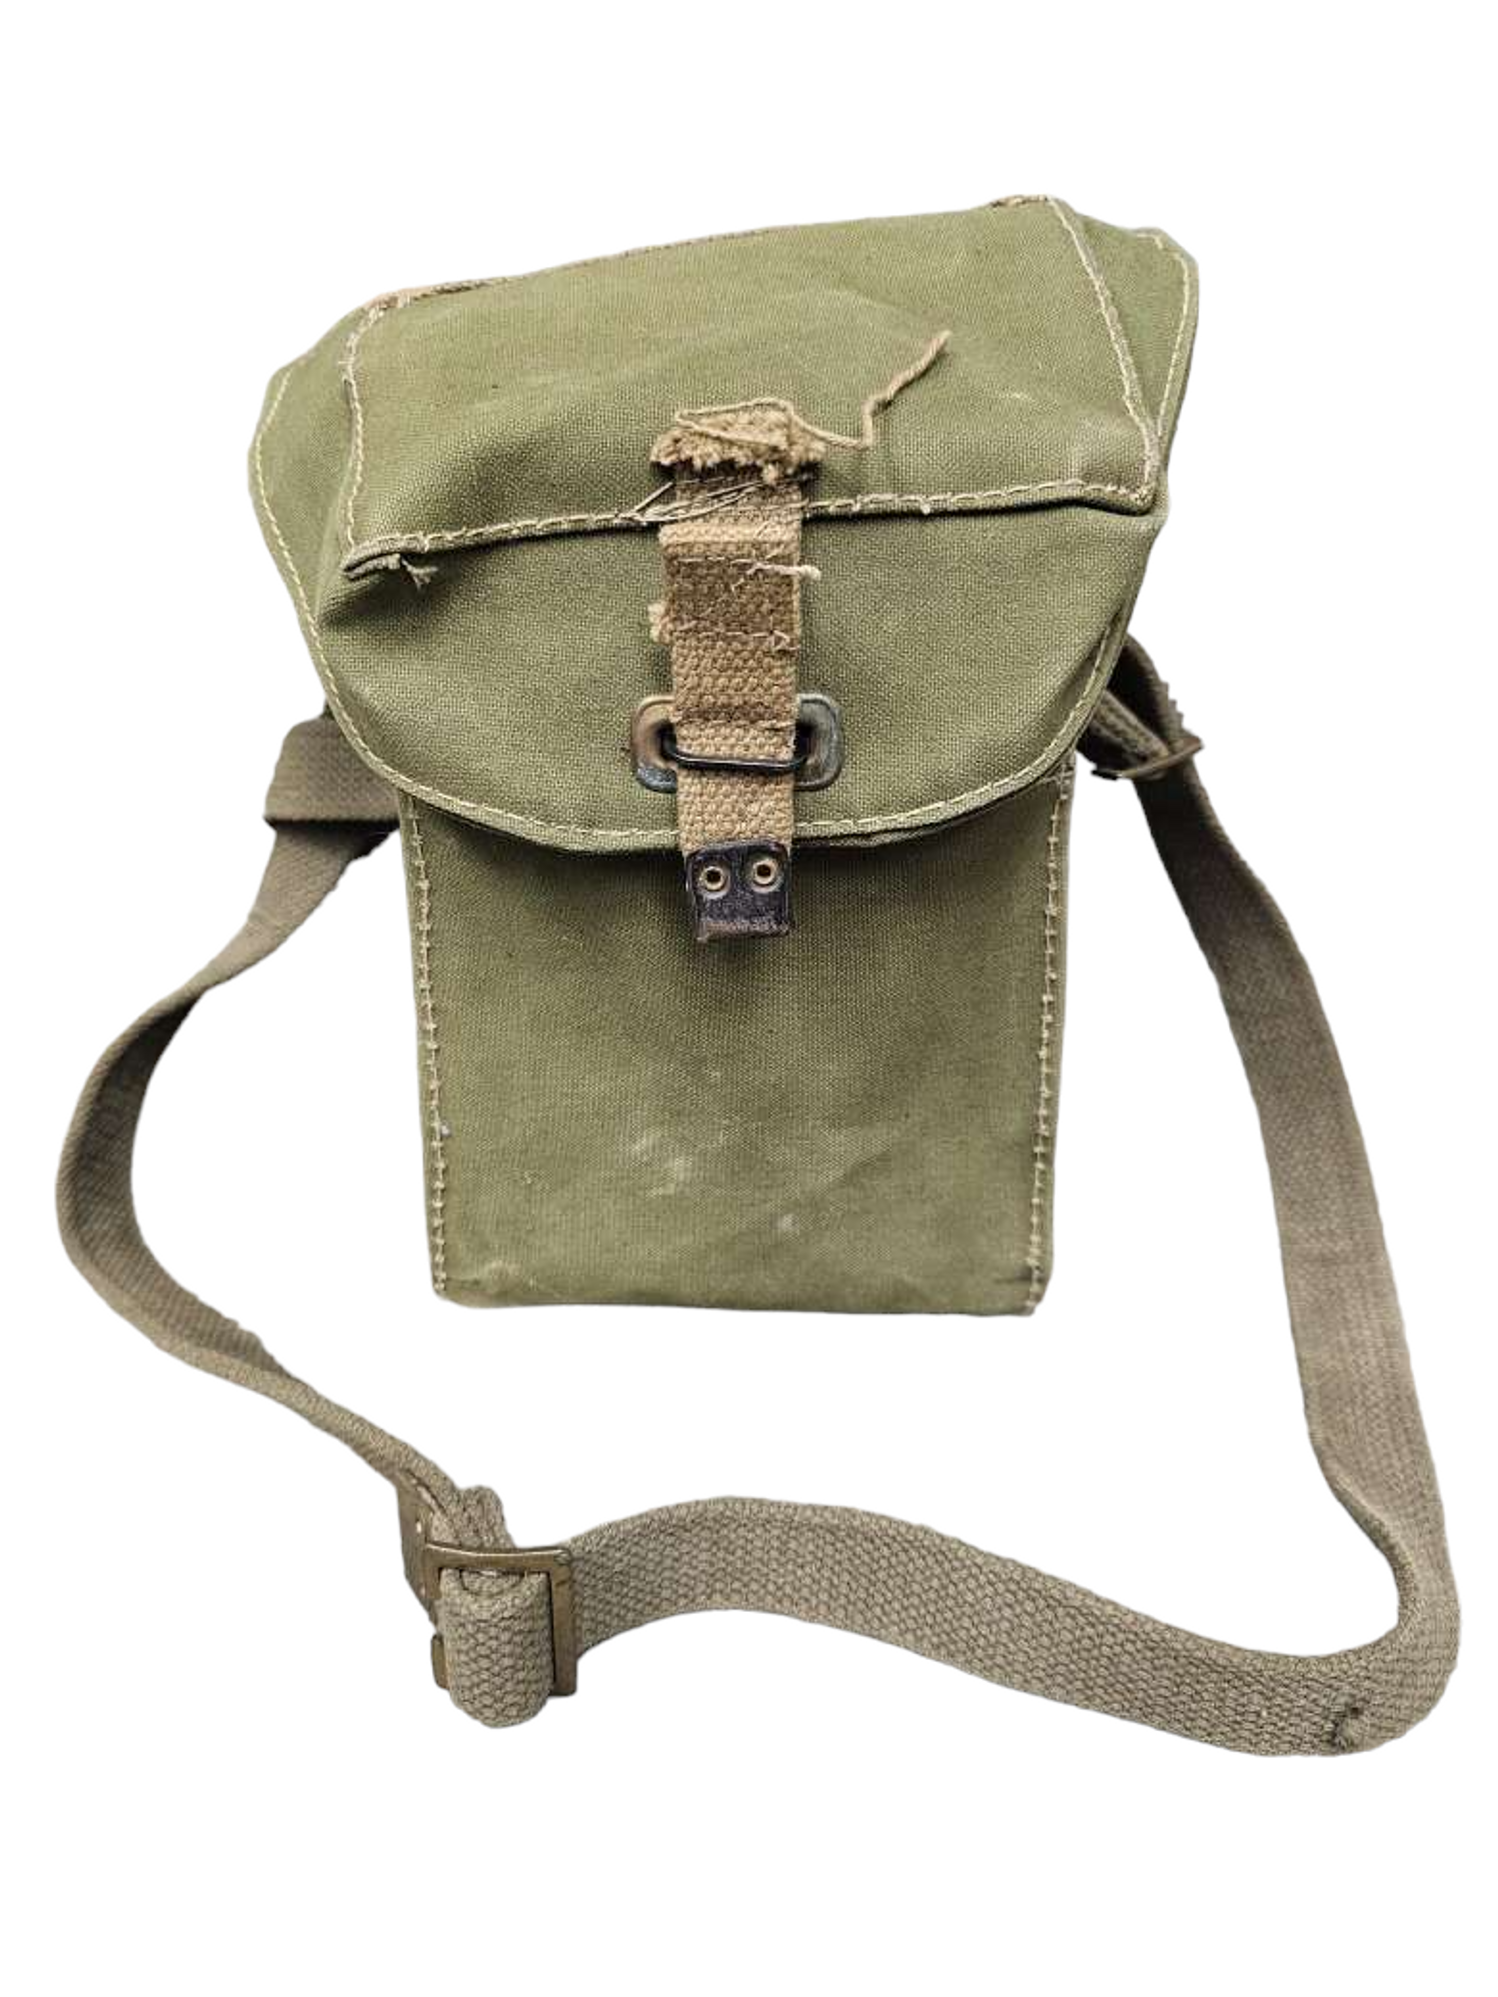 British Armed Forces MK2 Lightweight Gas Mask Bag